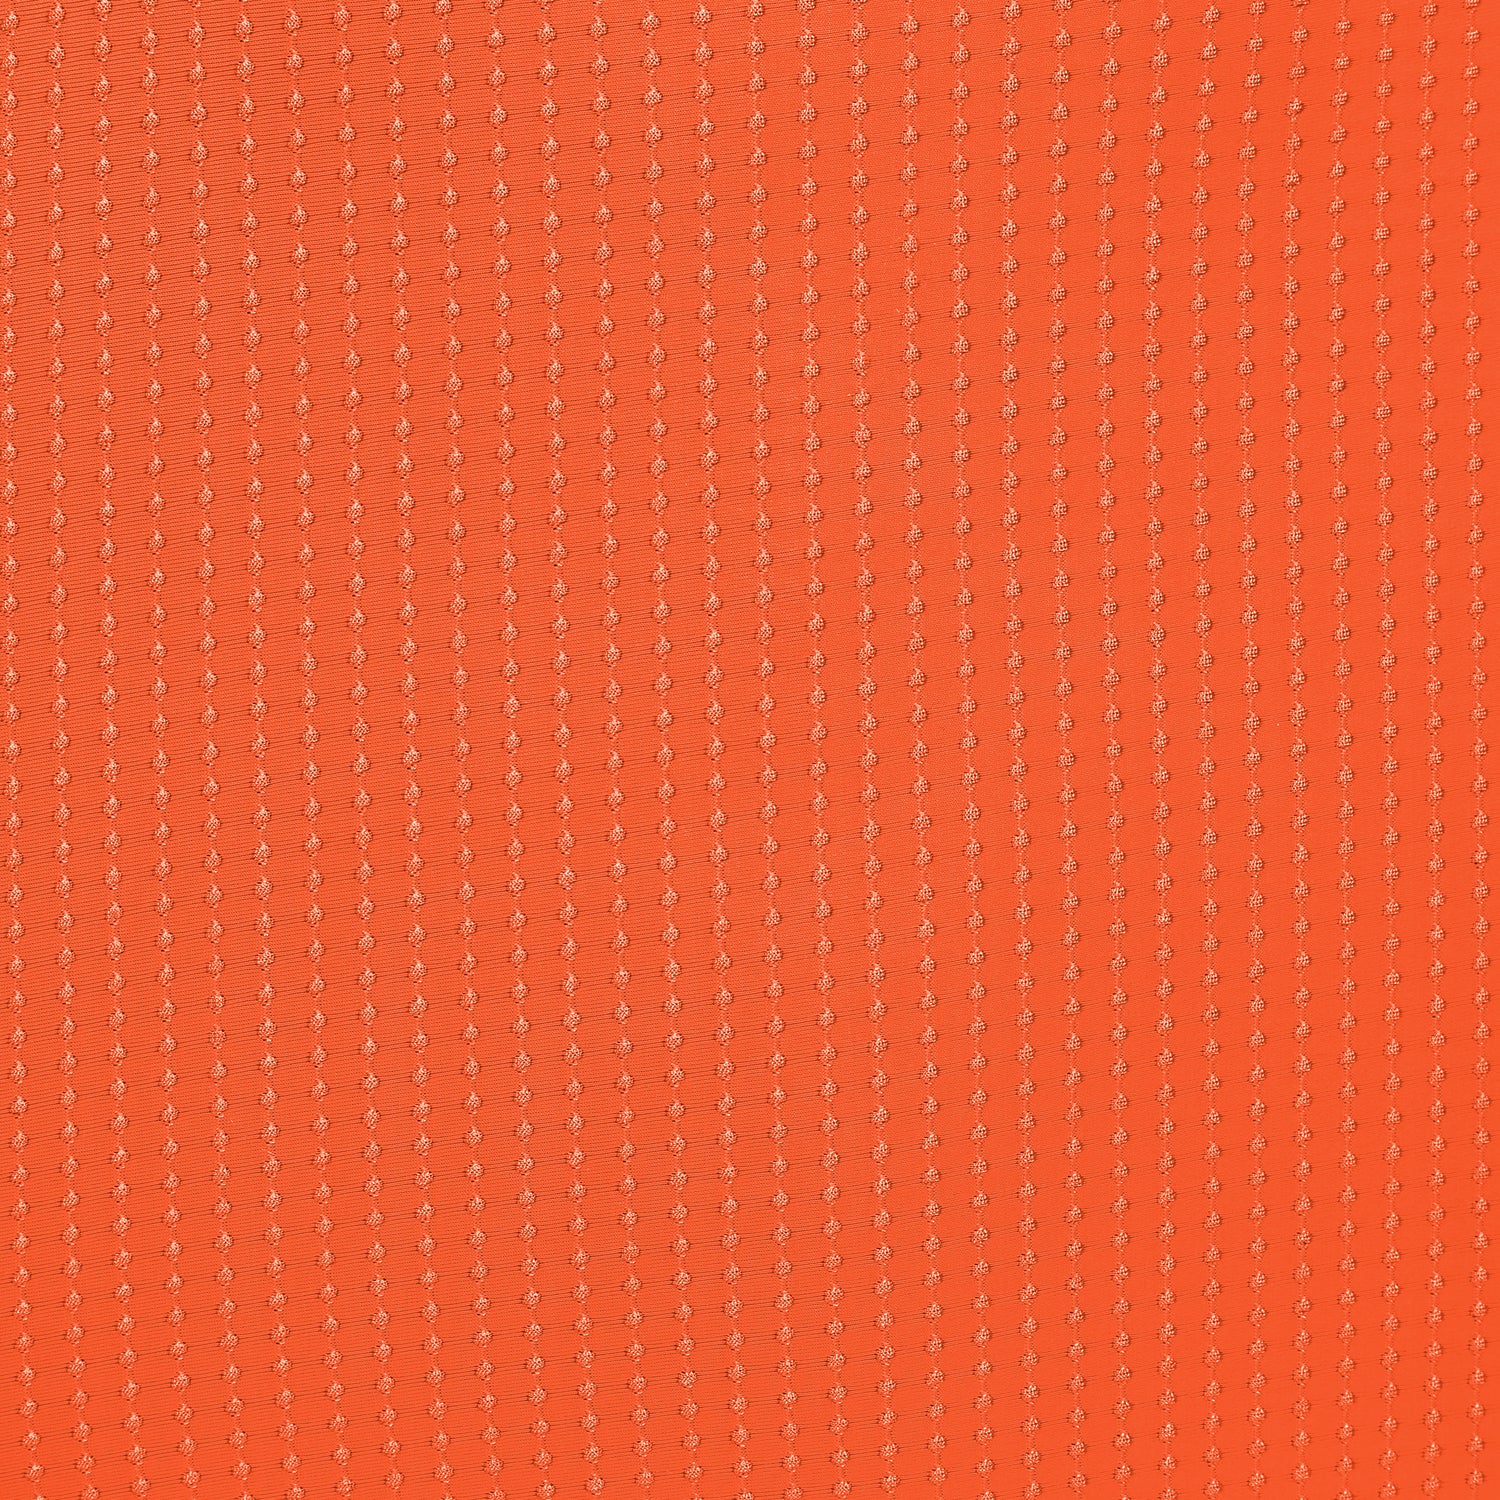 Dots-Orange Scrunchie